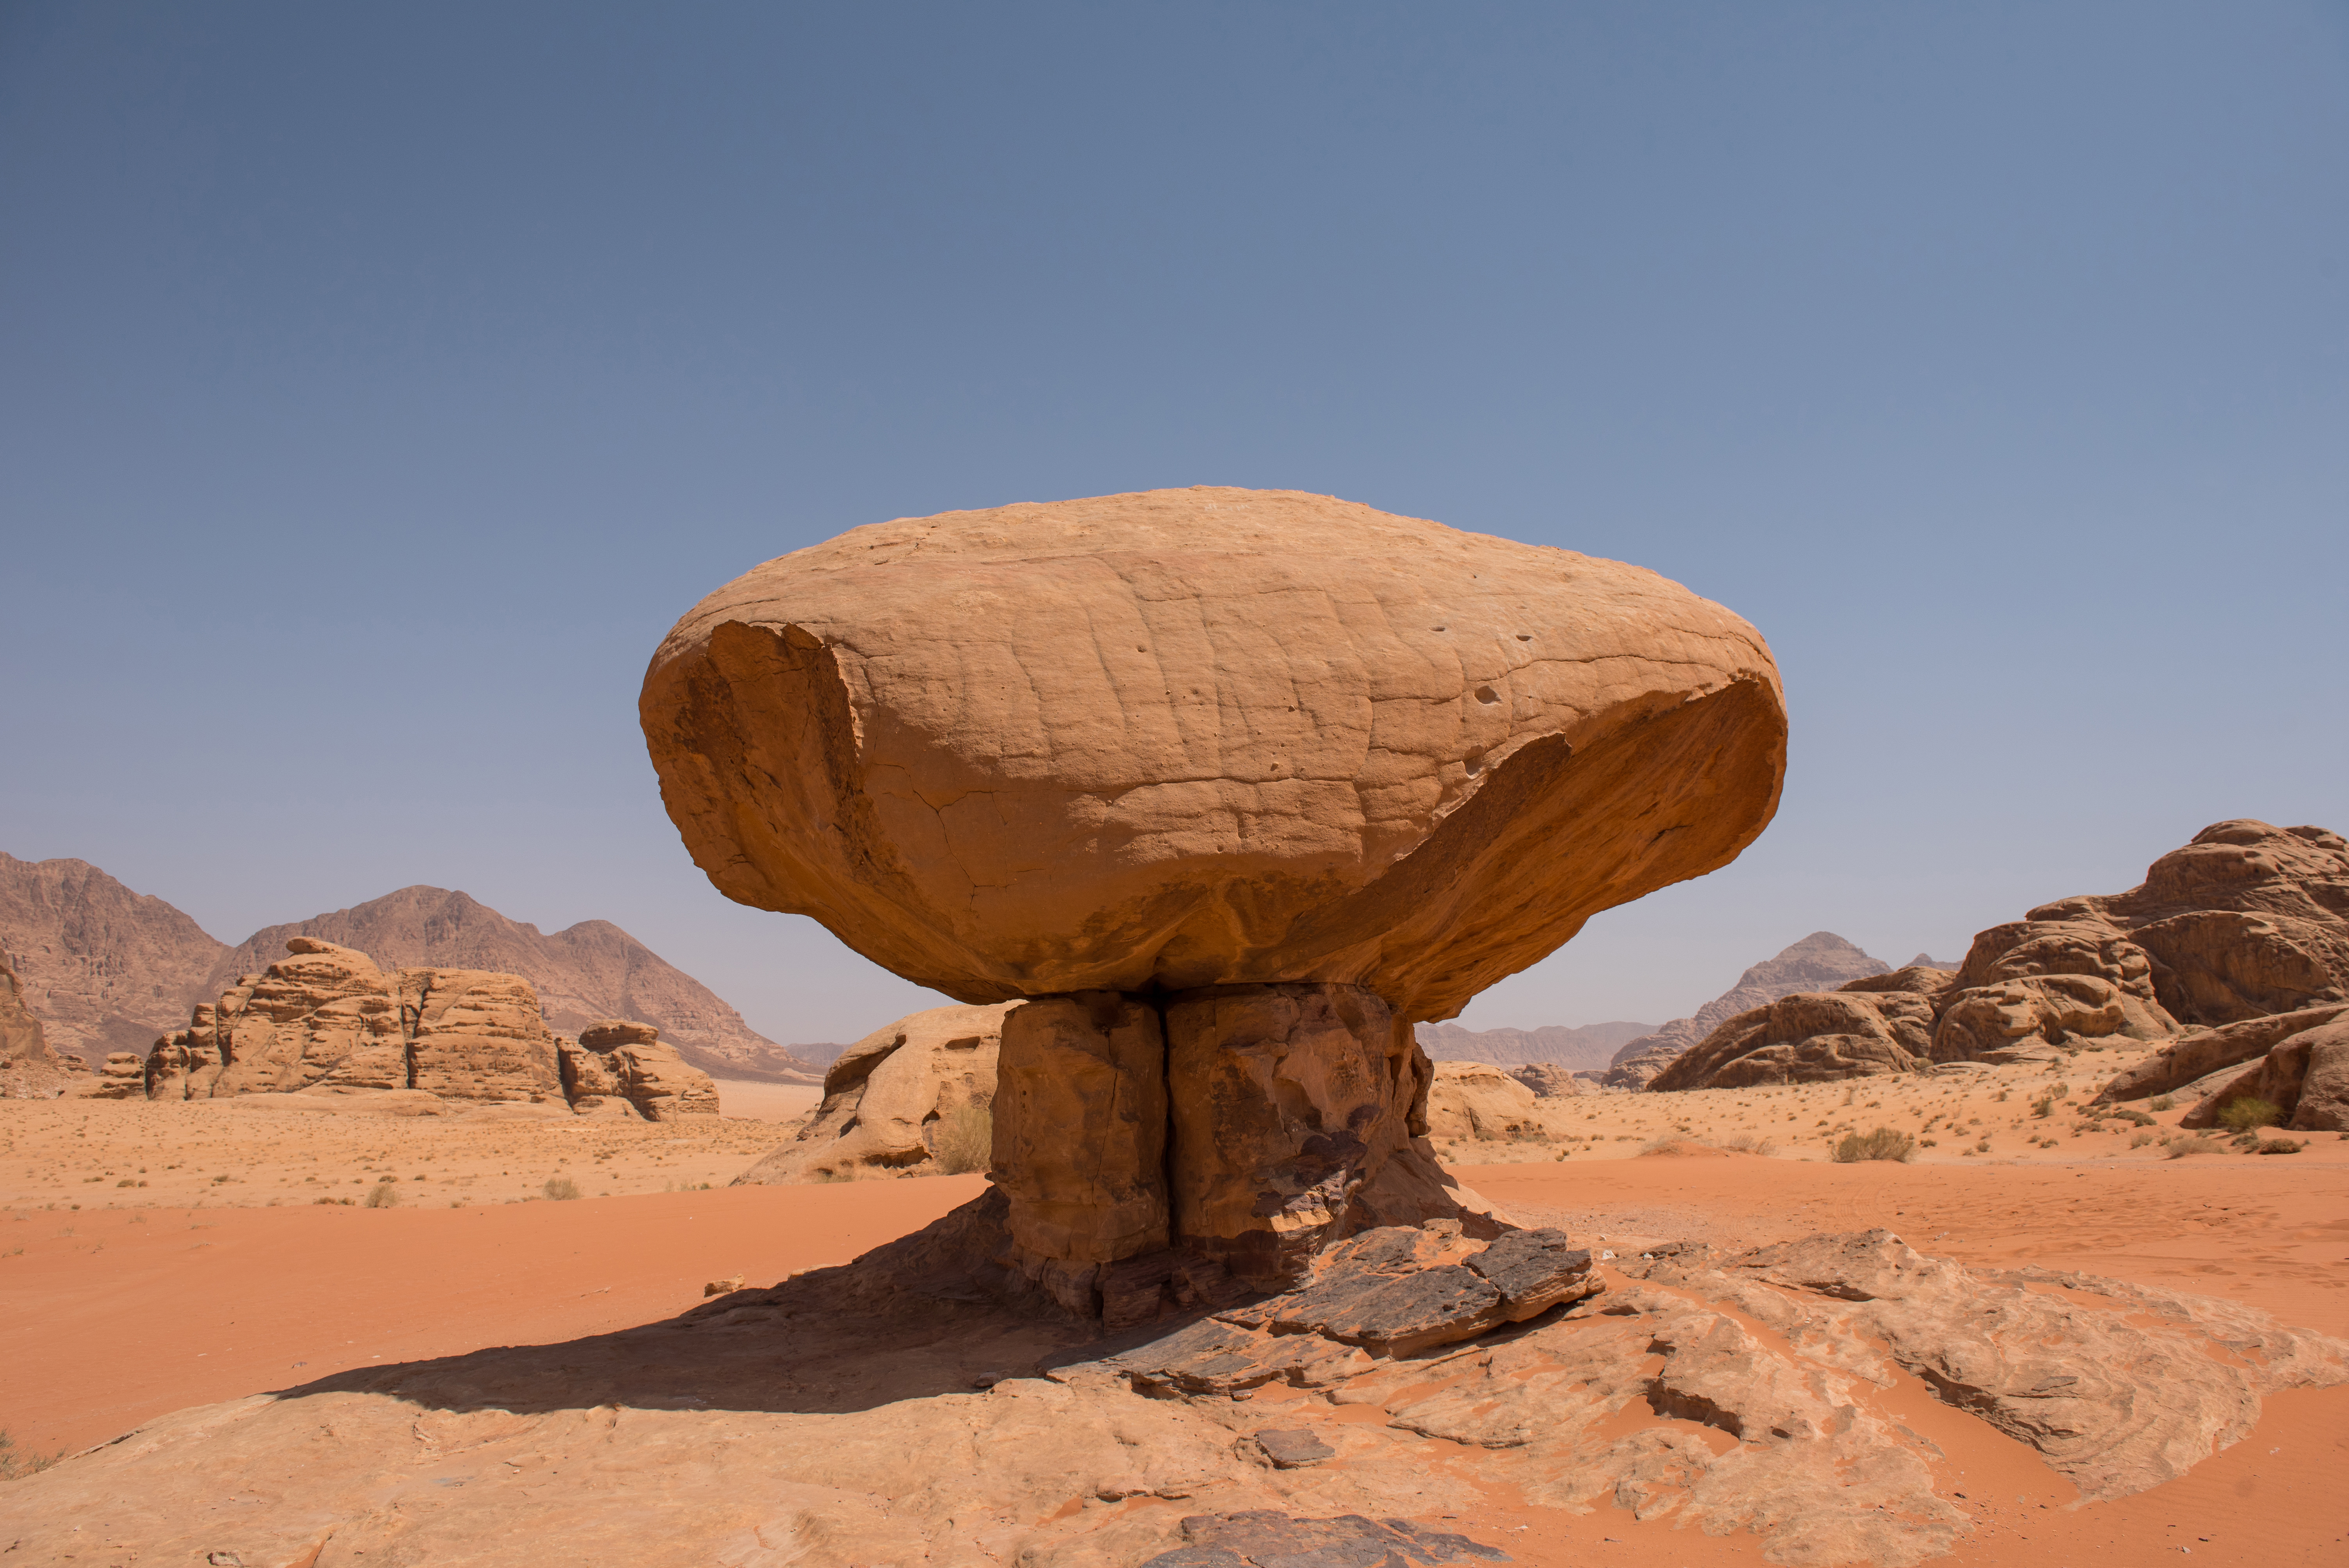 Mushroom rock in Wadi Rum desert